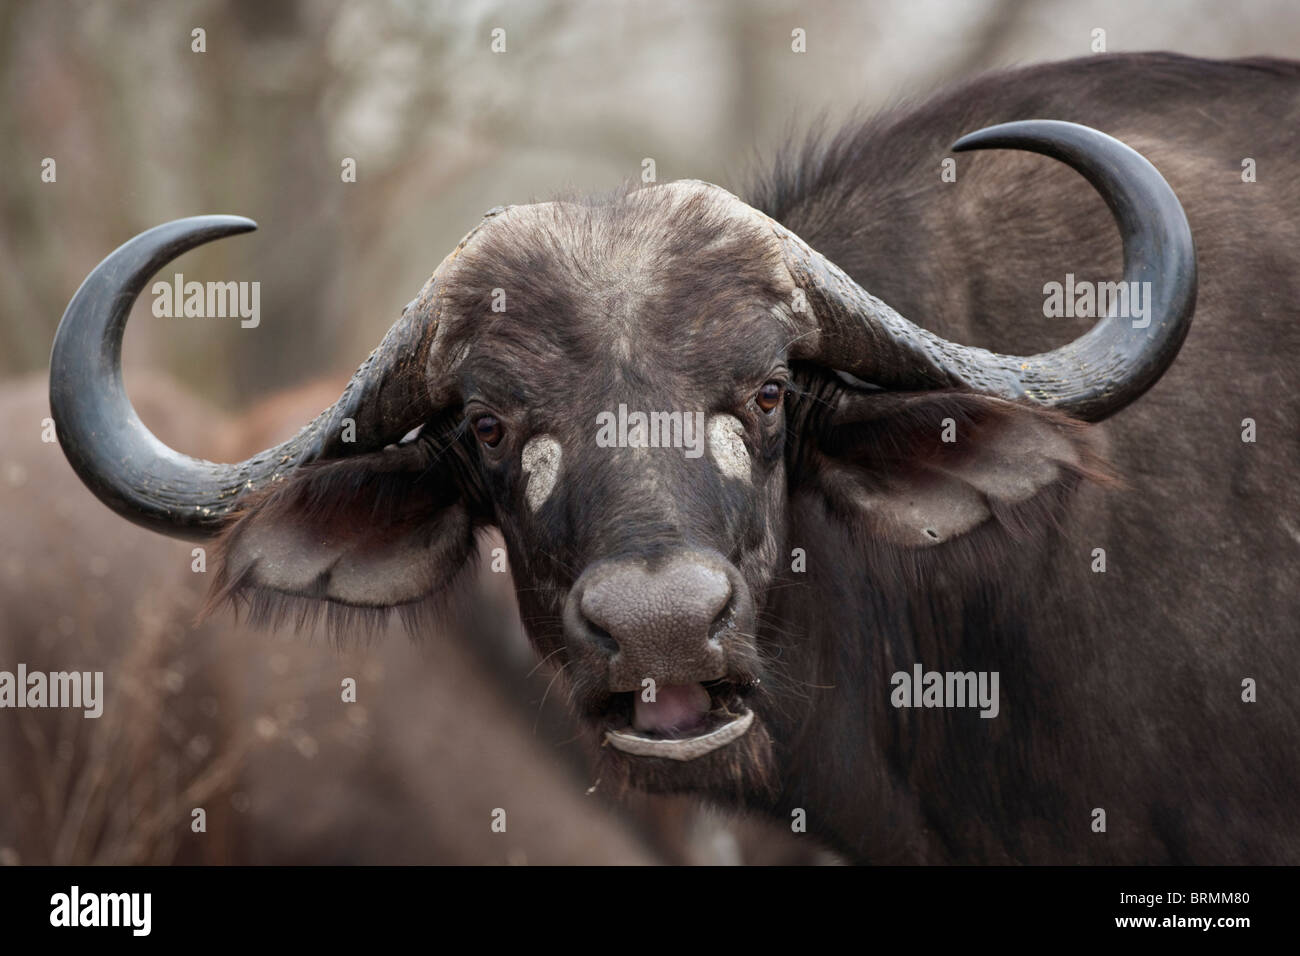 Frontale Porträt eines weiblichen Büffels mit seinen Kopf schräg geneigt Stockfoto